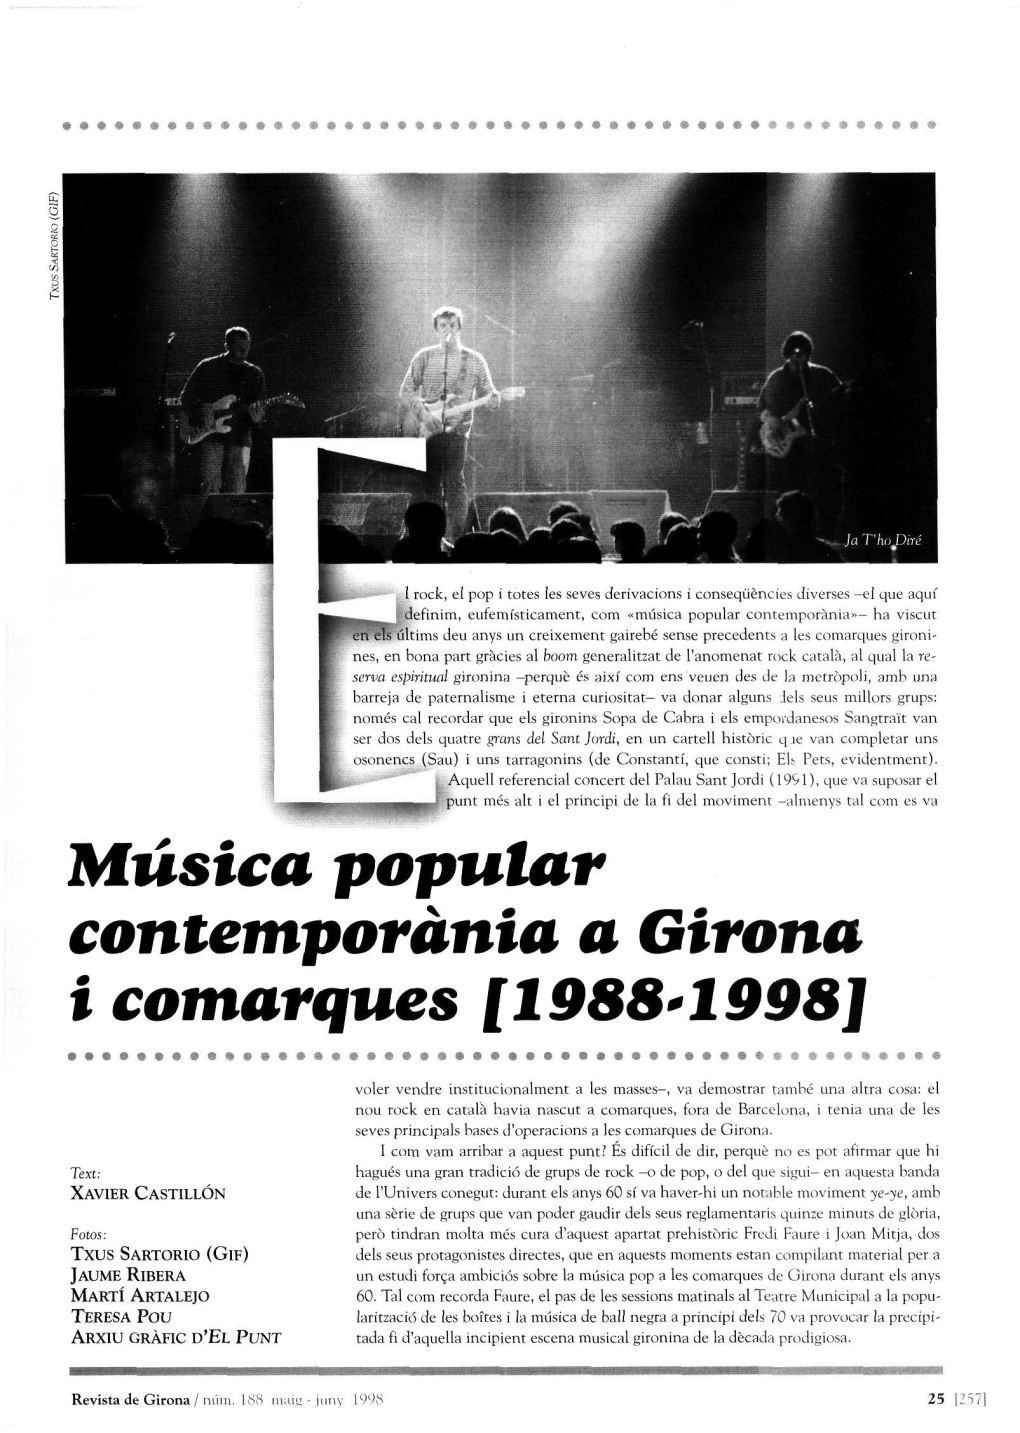 Música Popular Contentporánia a Gírona I Comarques [1988^1998]